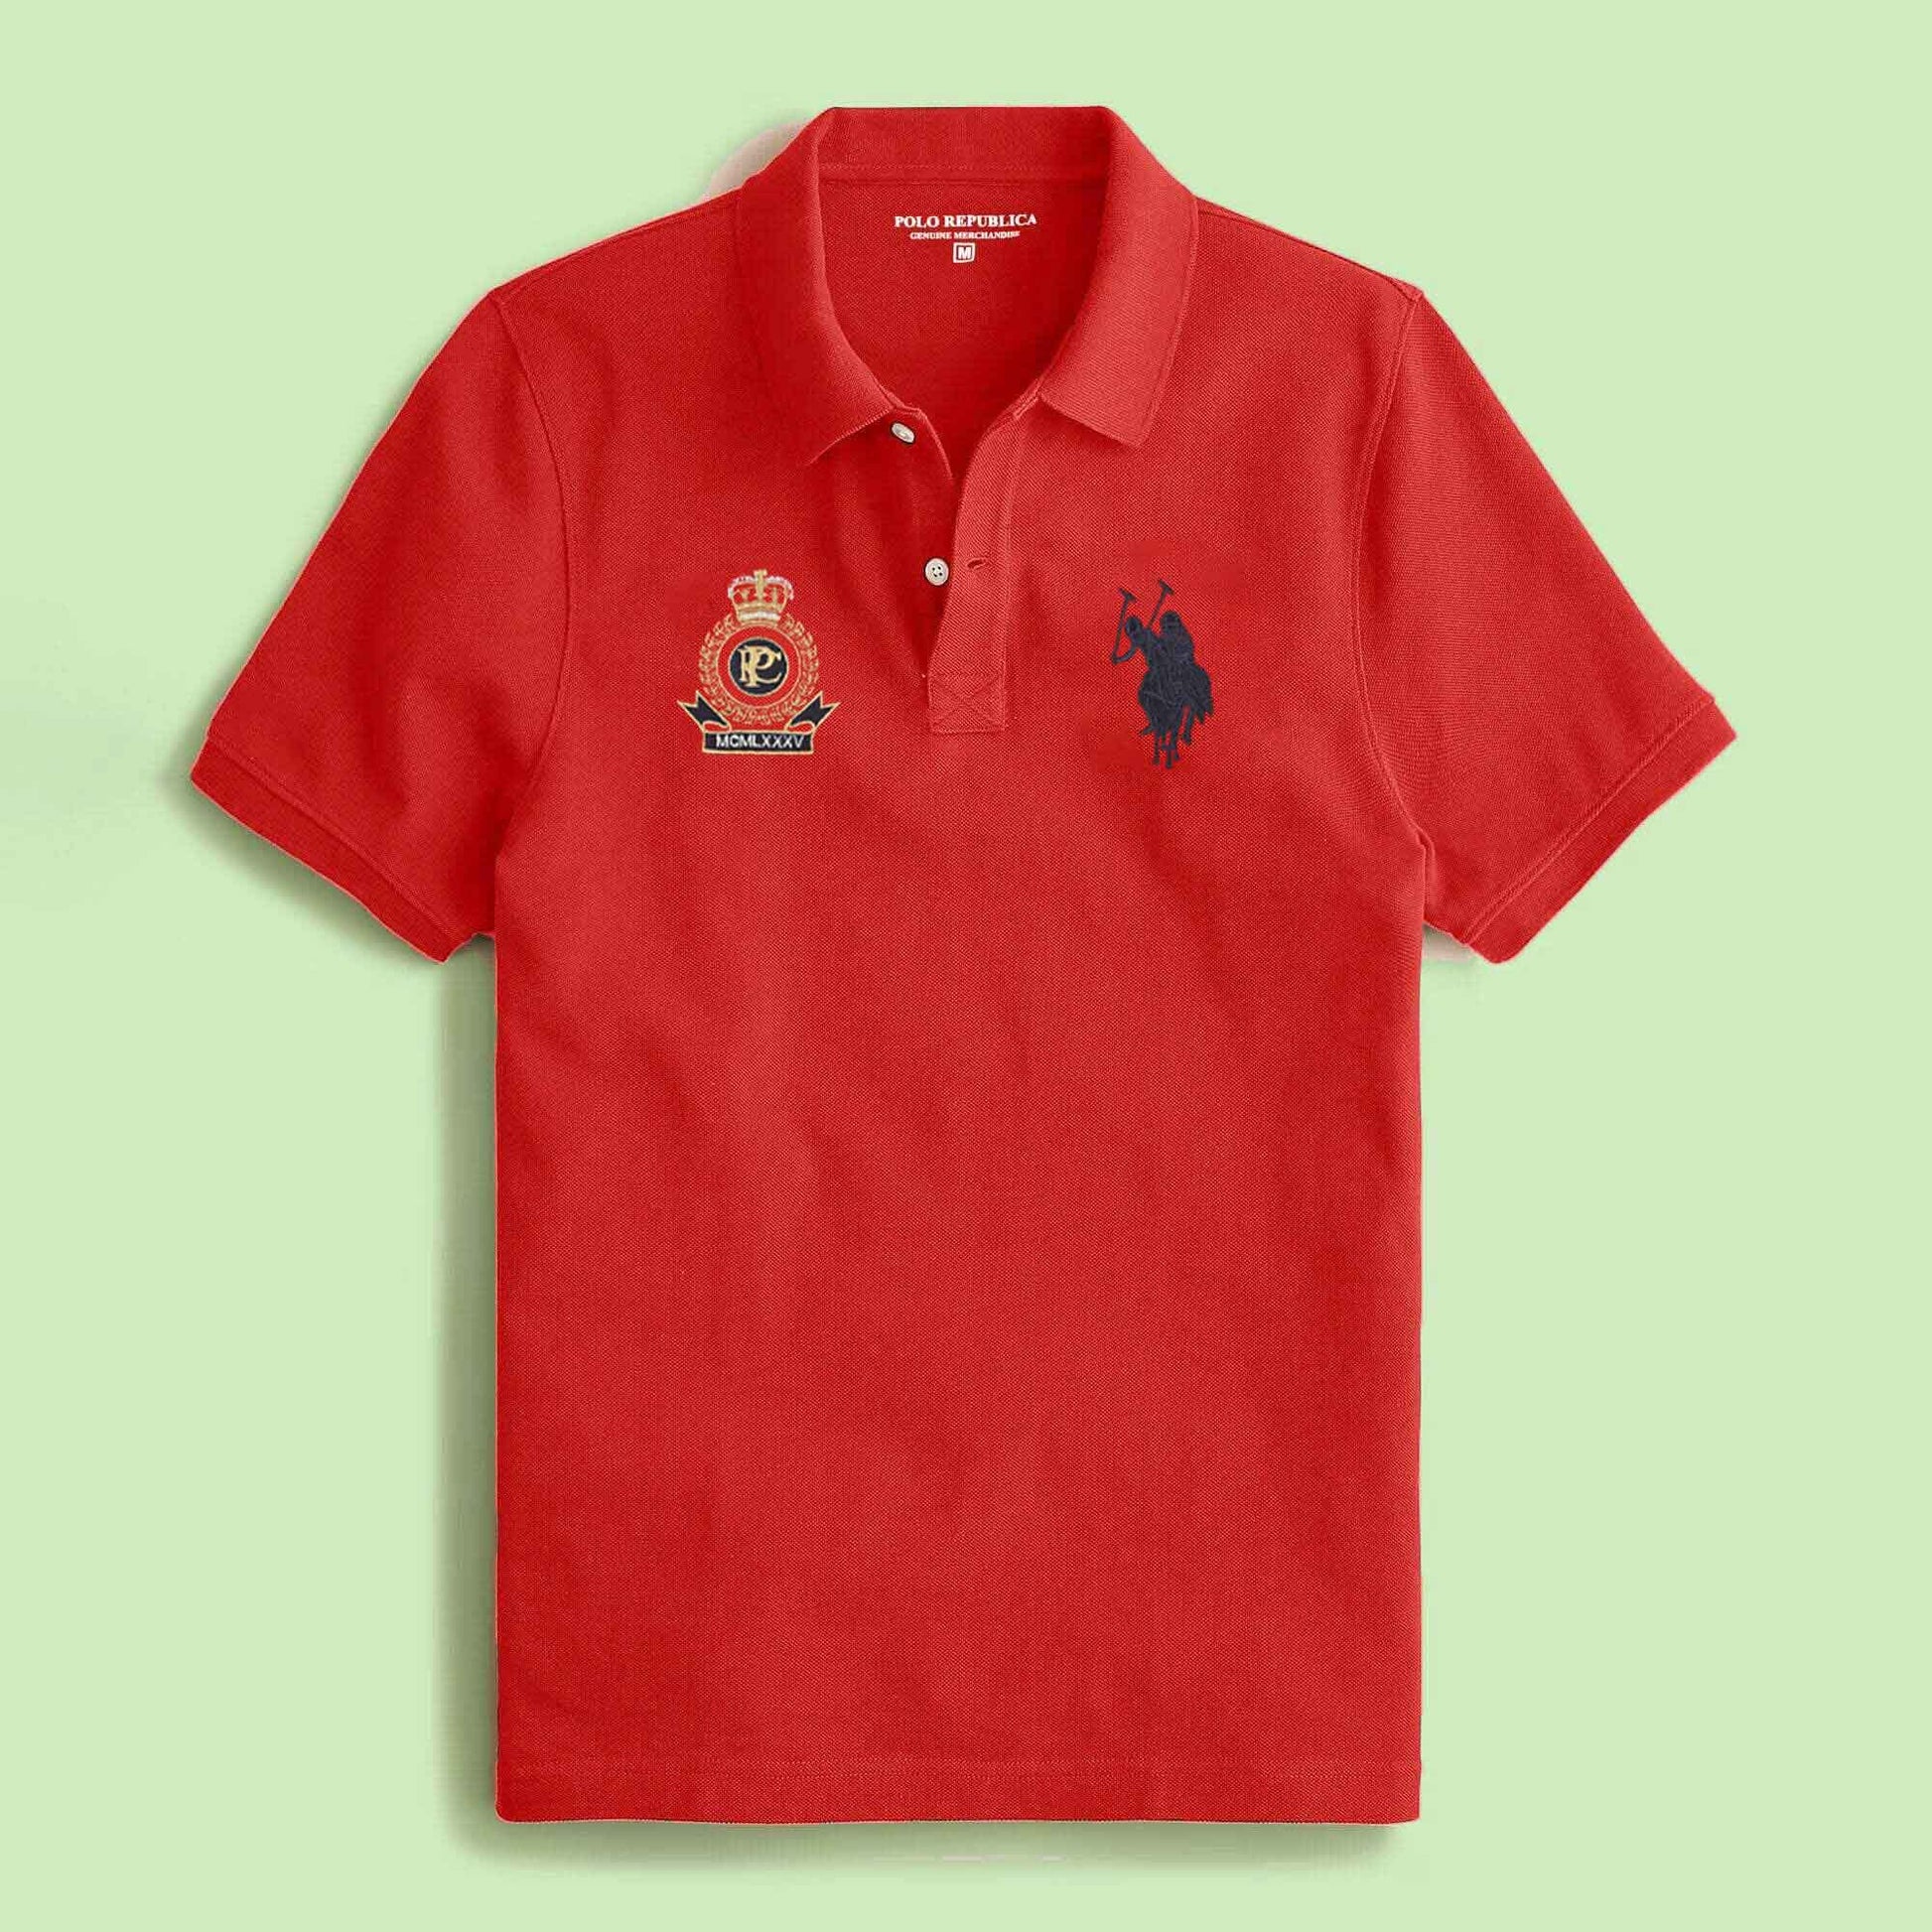 Polo Republica Men's 2 Pony Rider & Crest Embroidered Short Sleeve Polo Shirt Men's Polo Shirt Polo Republica 